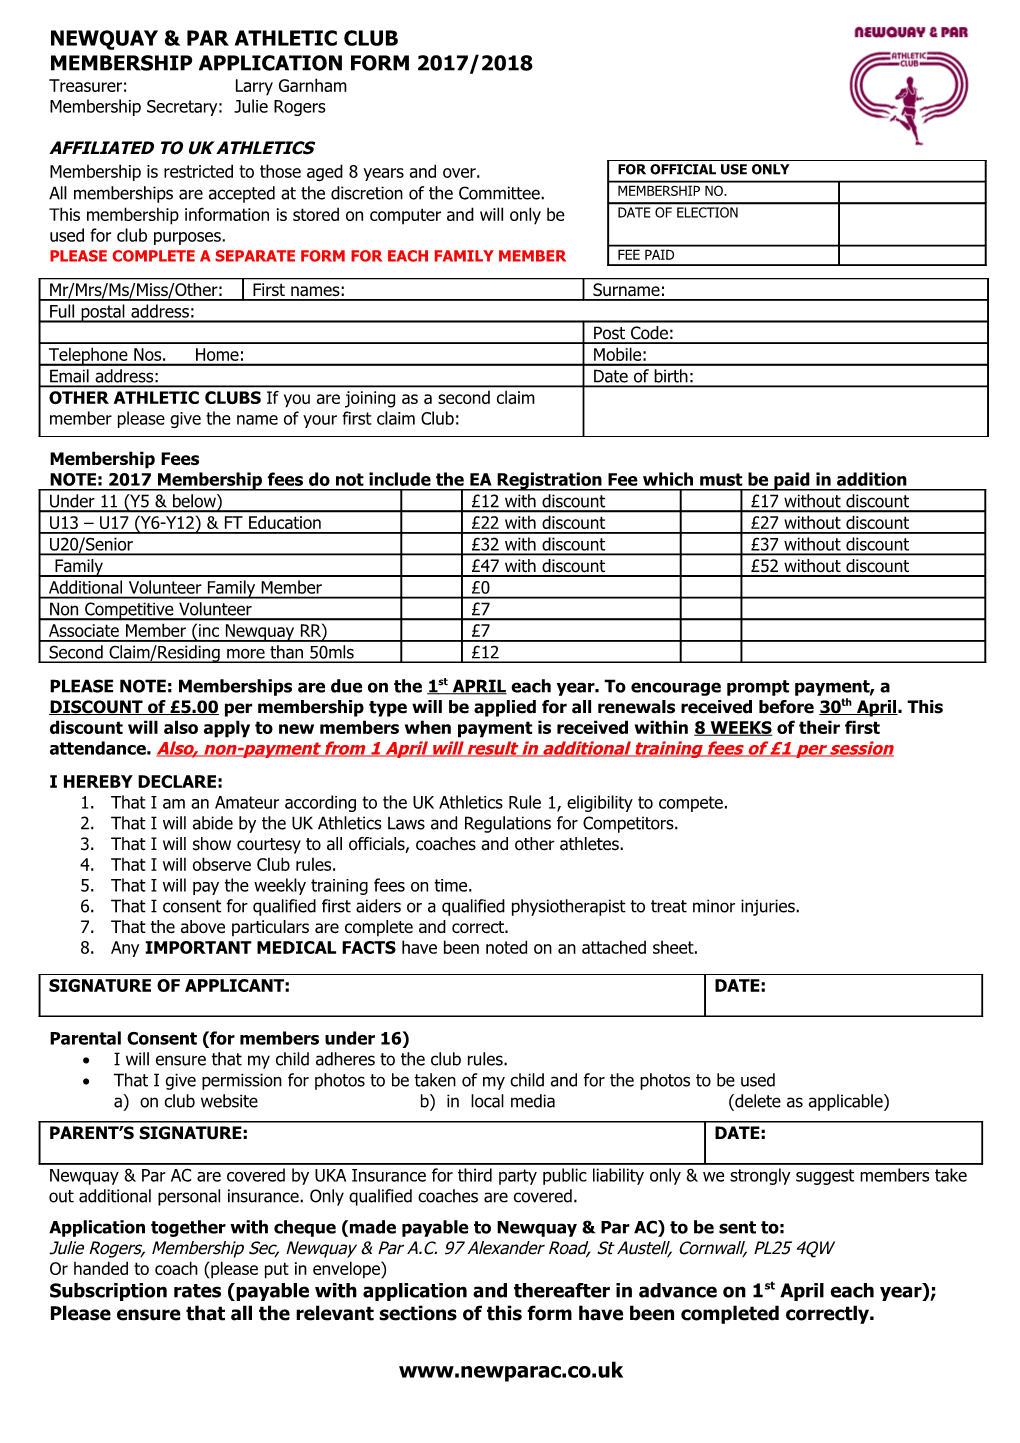 Newquay & Par Athletic Club Membership Application Form 2010/2011